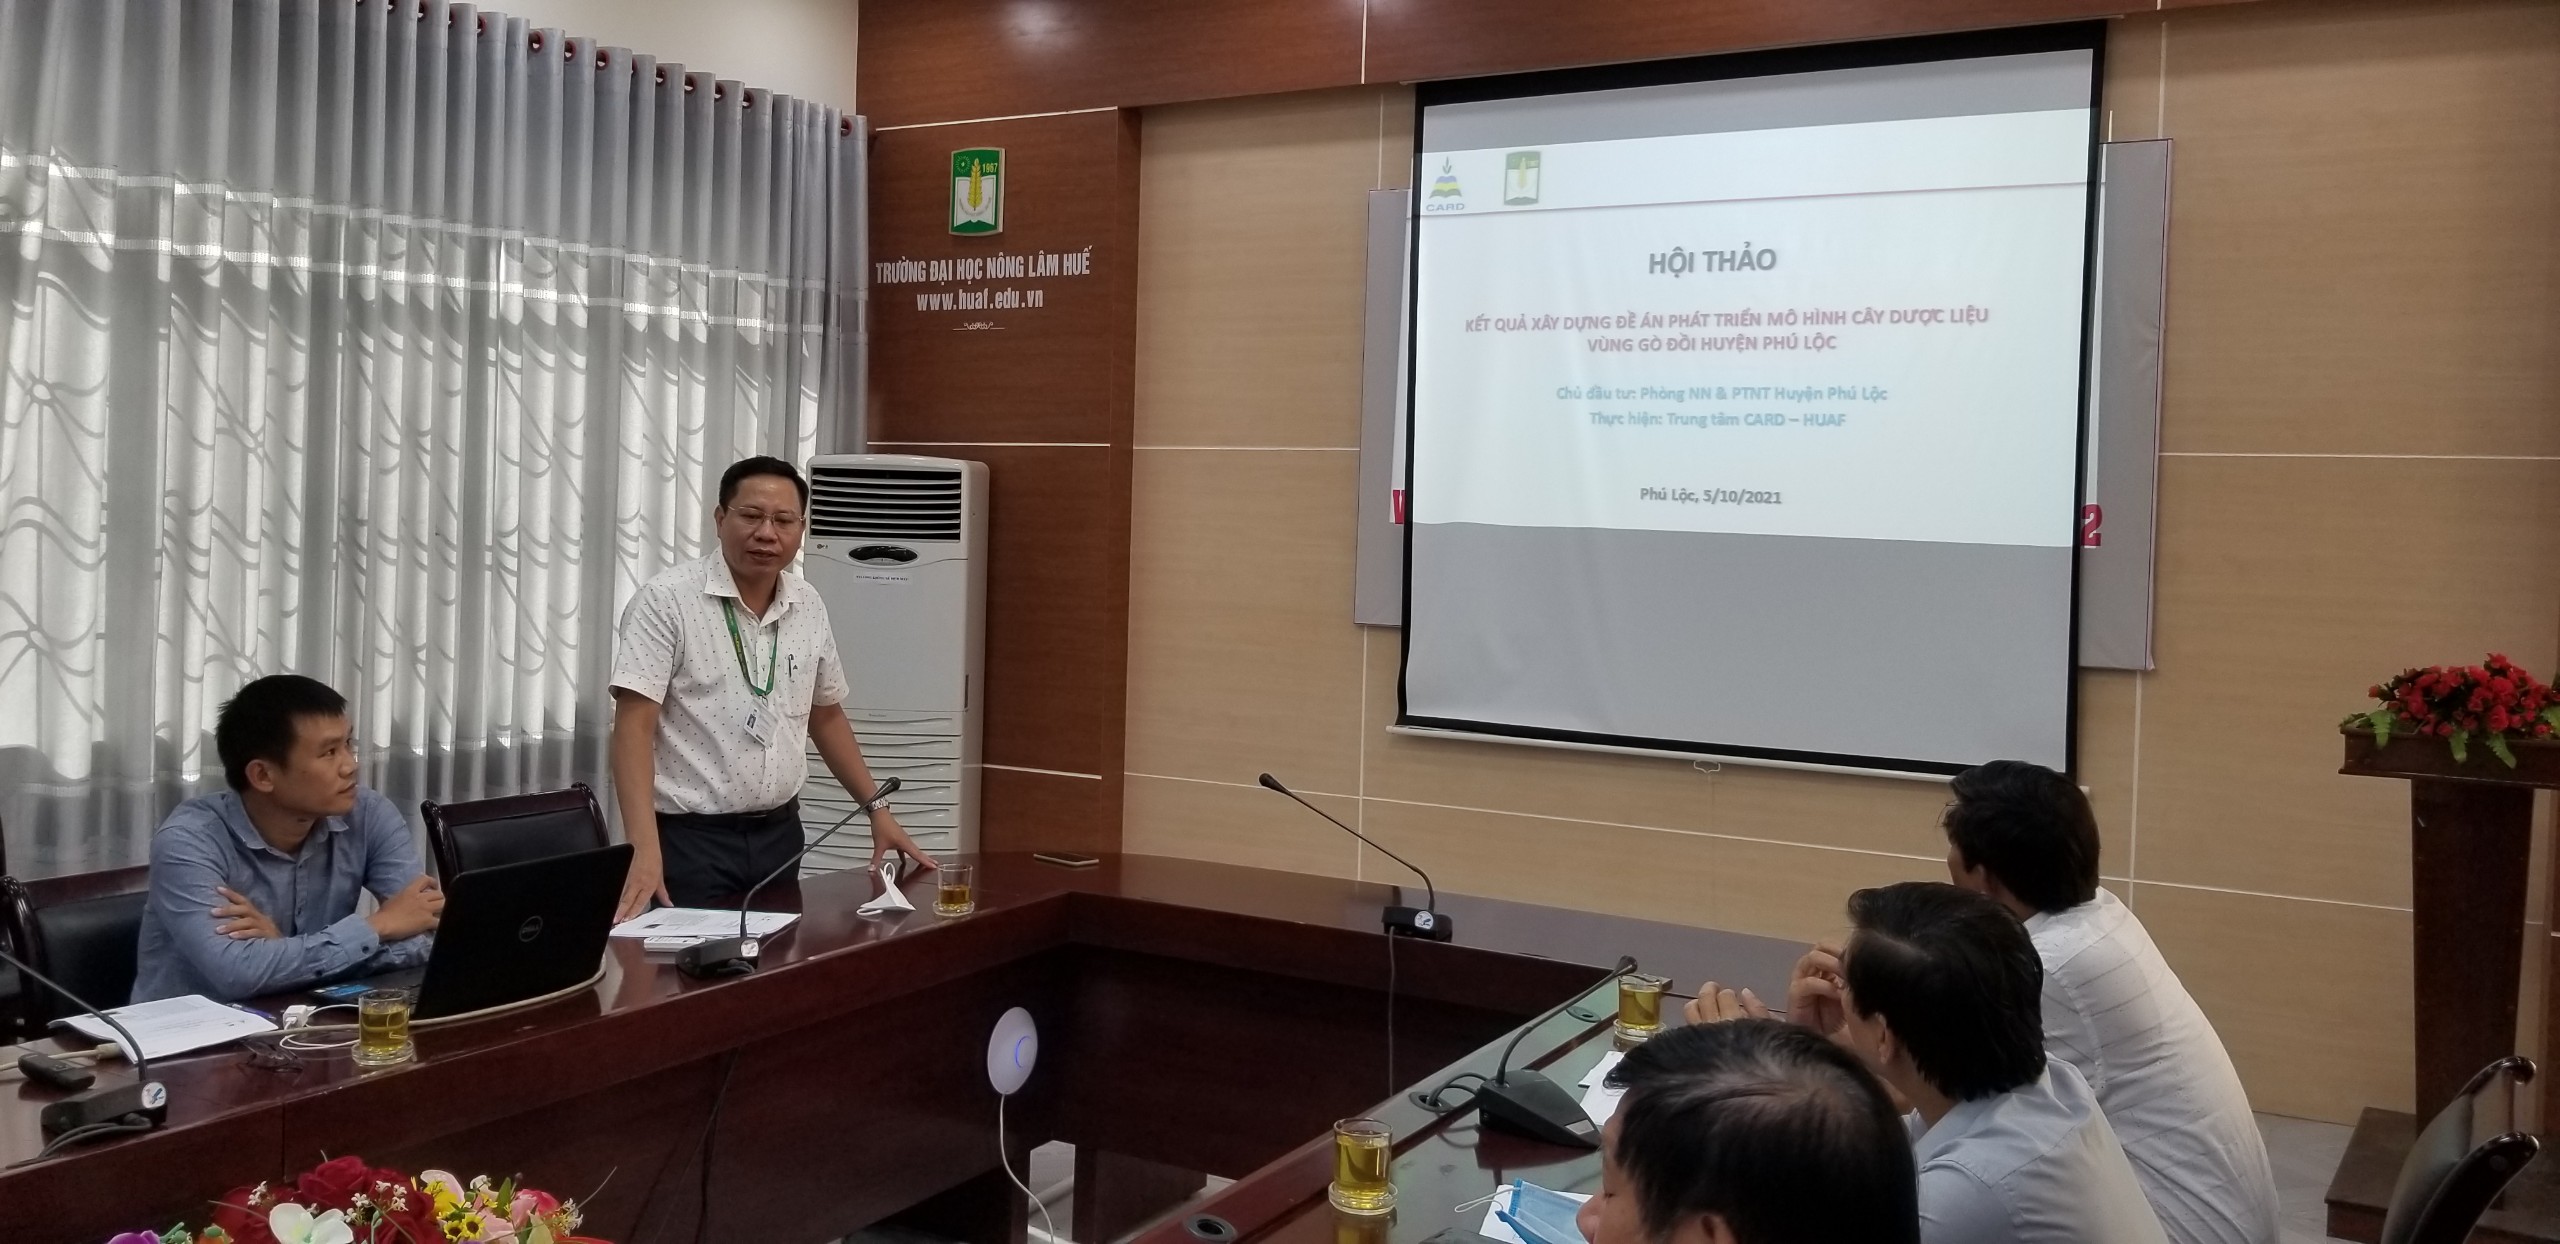 PGS.TS. Trần Thnah Đức phát biểu tại Hội thảo góp ý đề án phát triển mô hình cây dược liệu vùng gò đồi huyện Phú Lộc